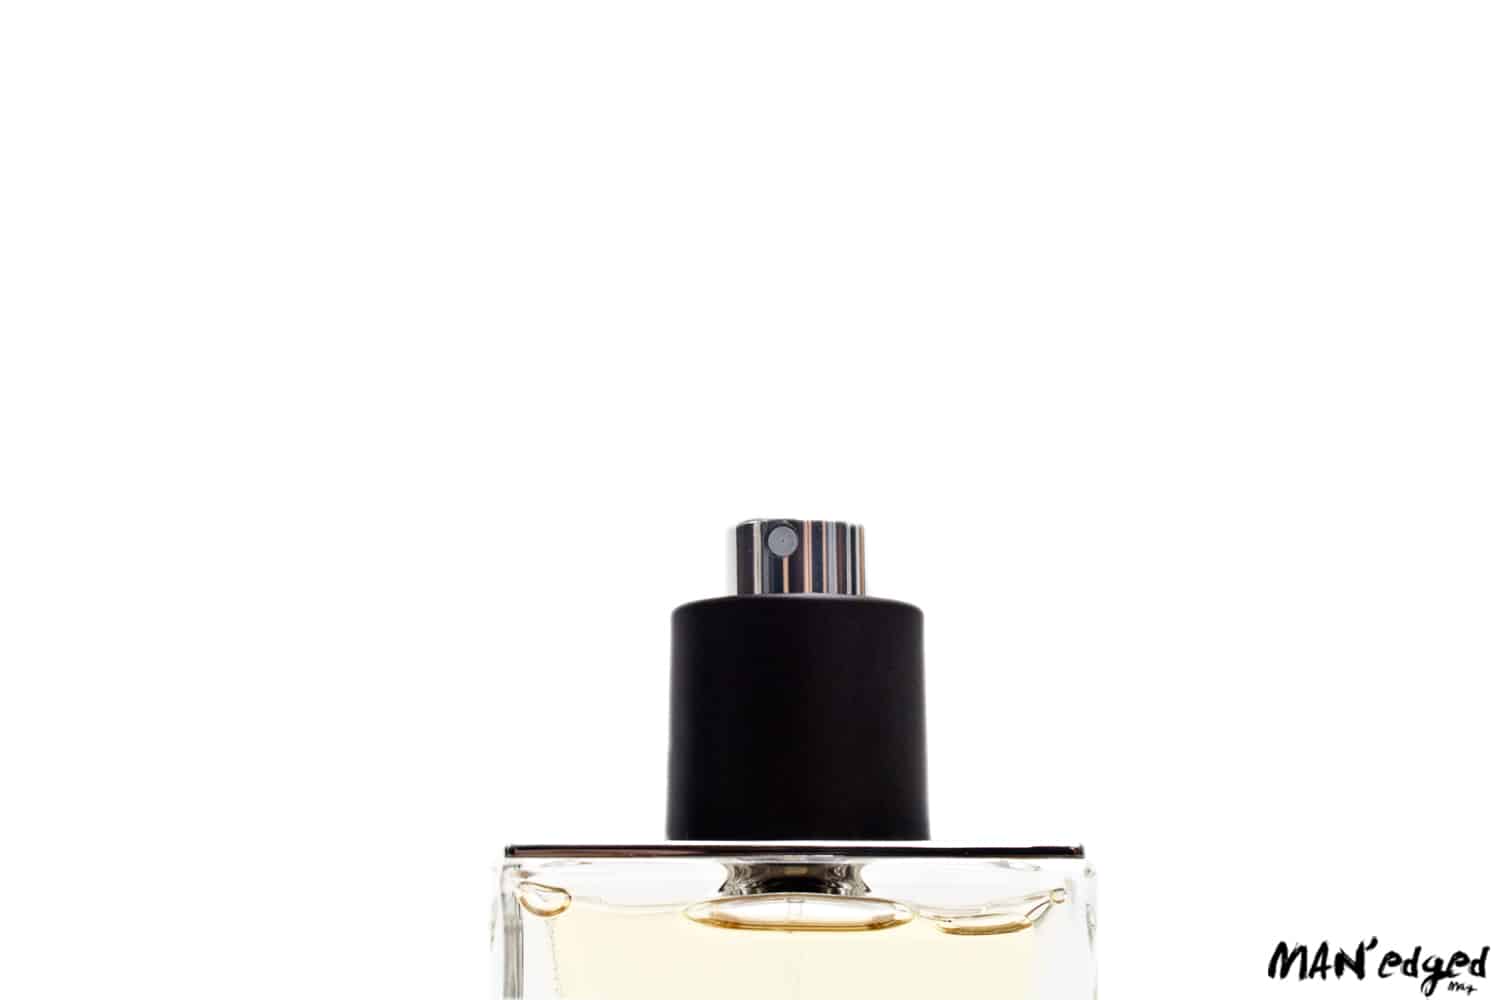 Close up of men's cologne fragrance bottle.